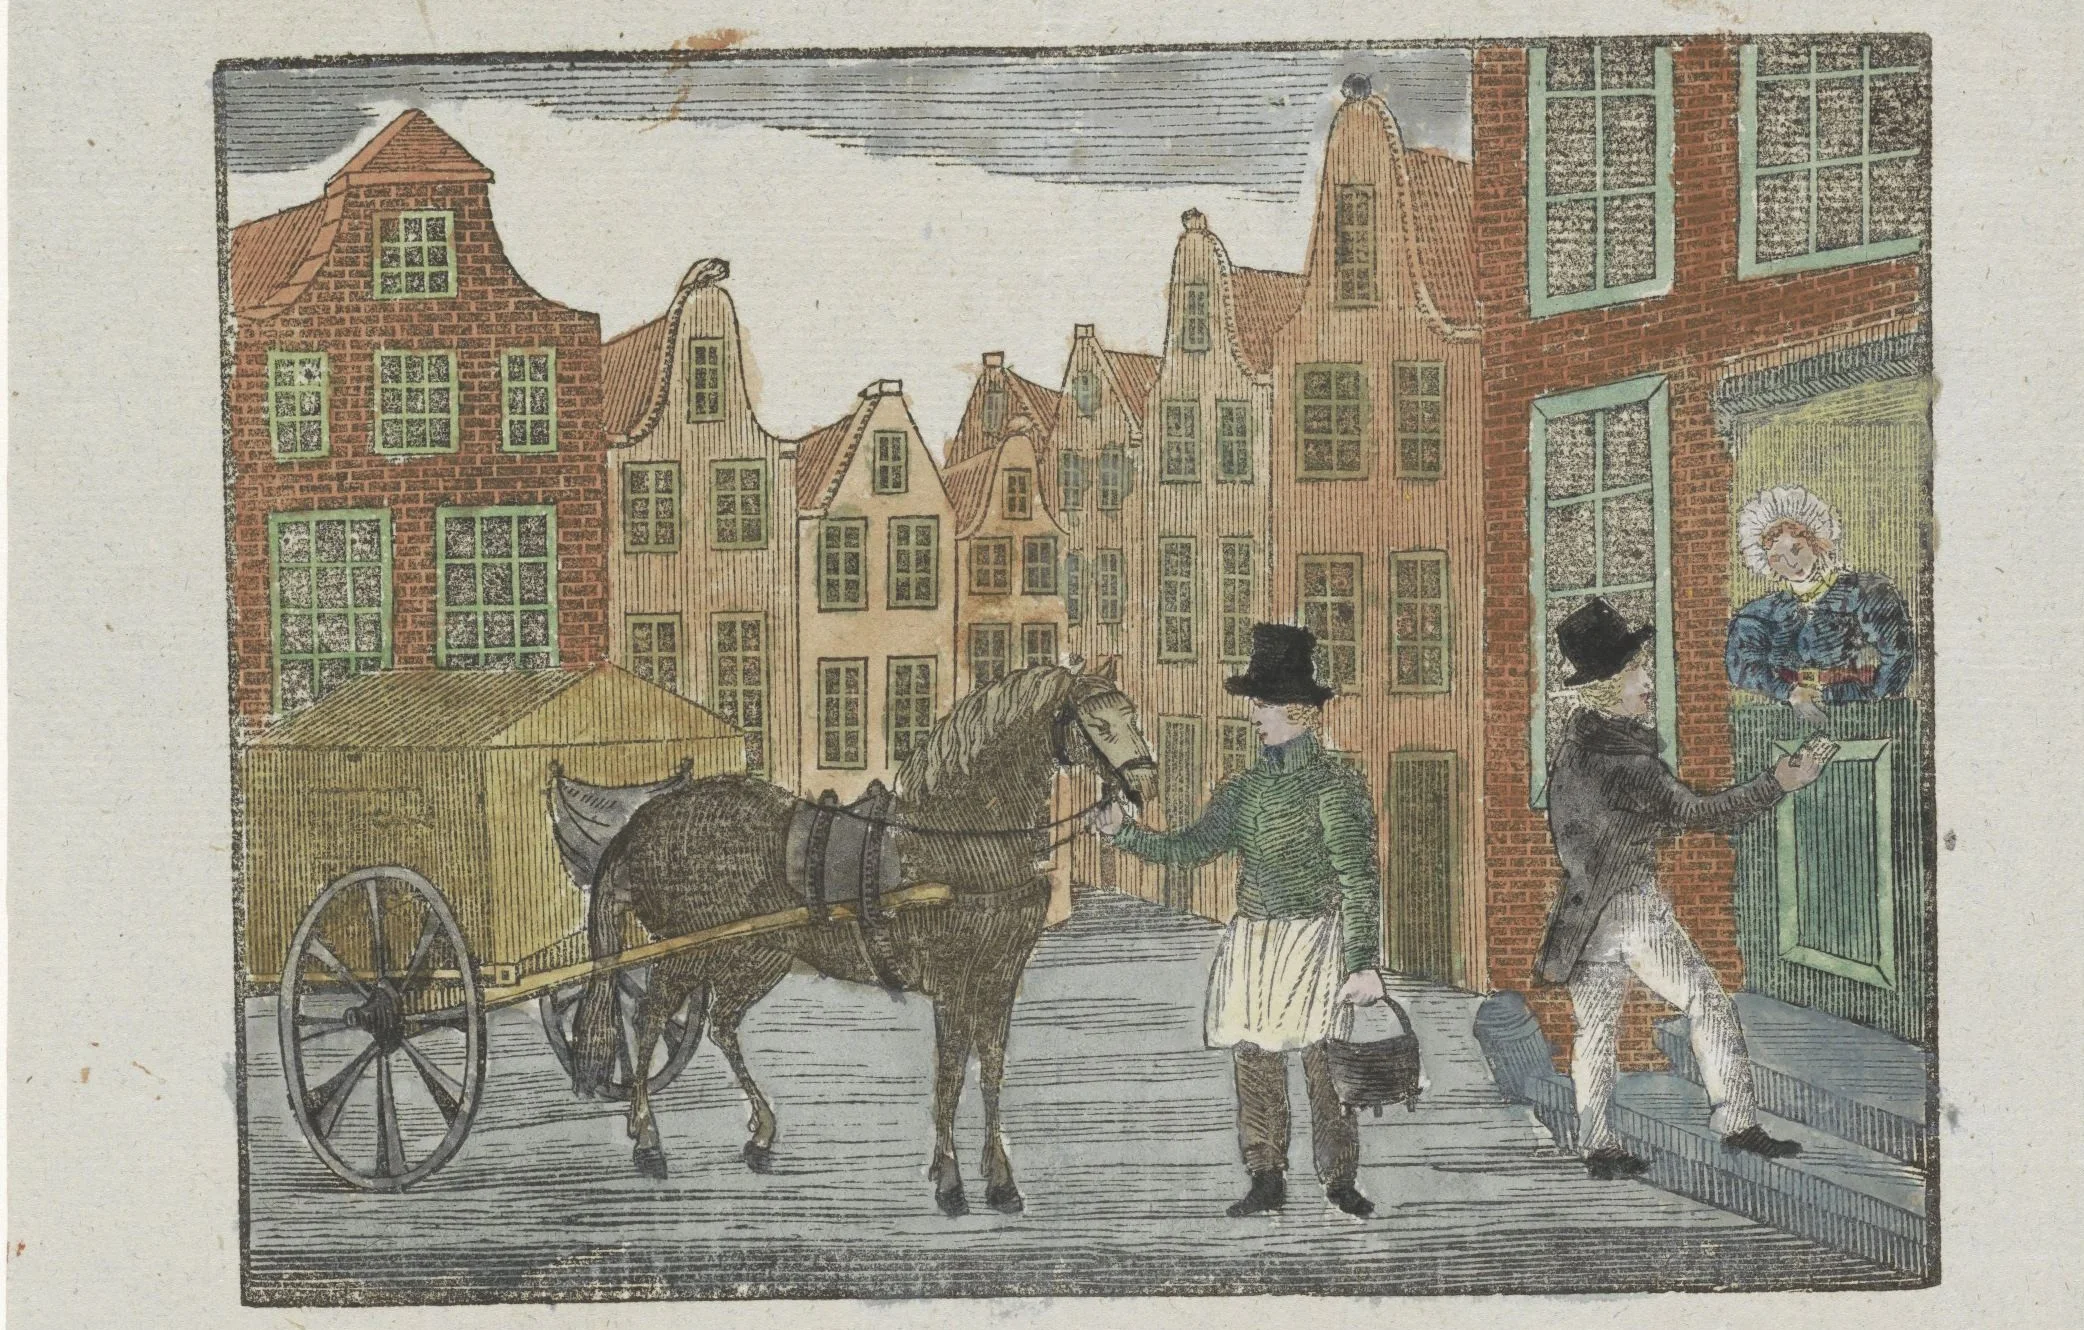 Kermisprent van de Amsterdamse askarrenmannen voor het jaar 1843, anoniem. Rijksmuseum Amsterdam.